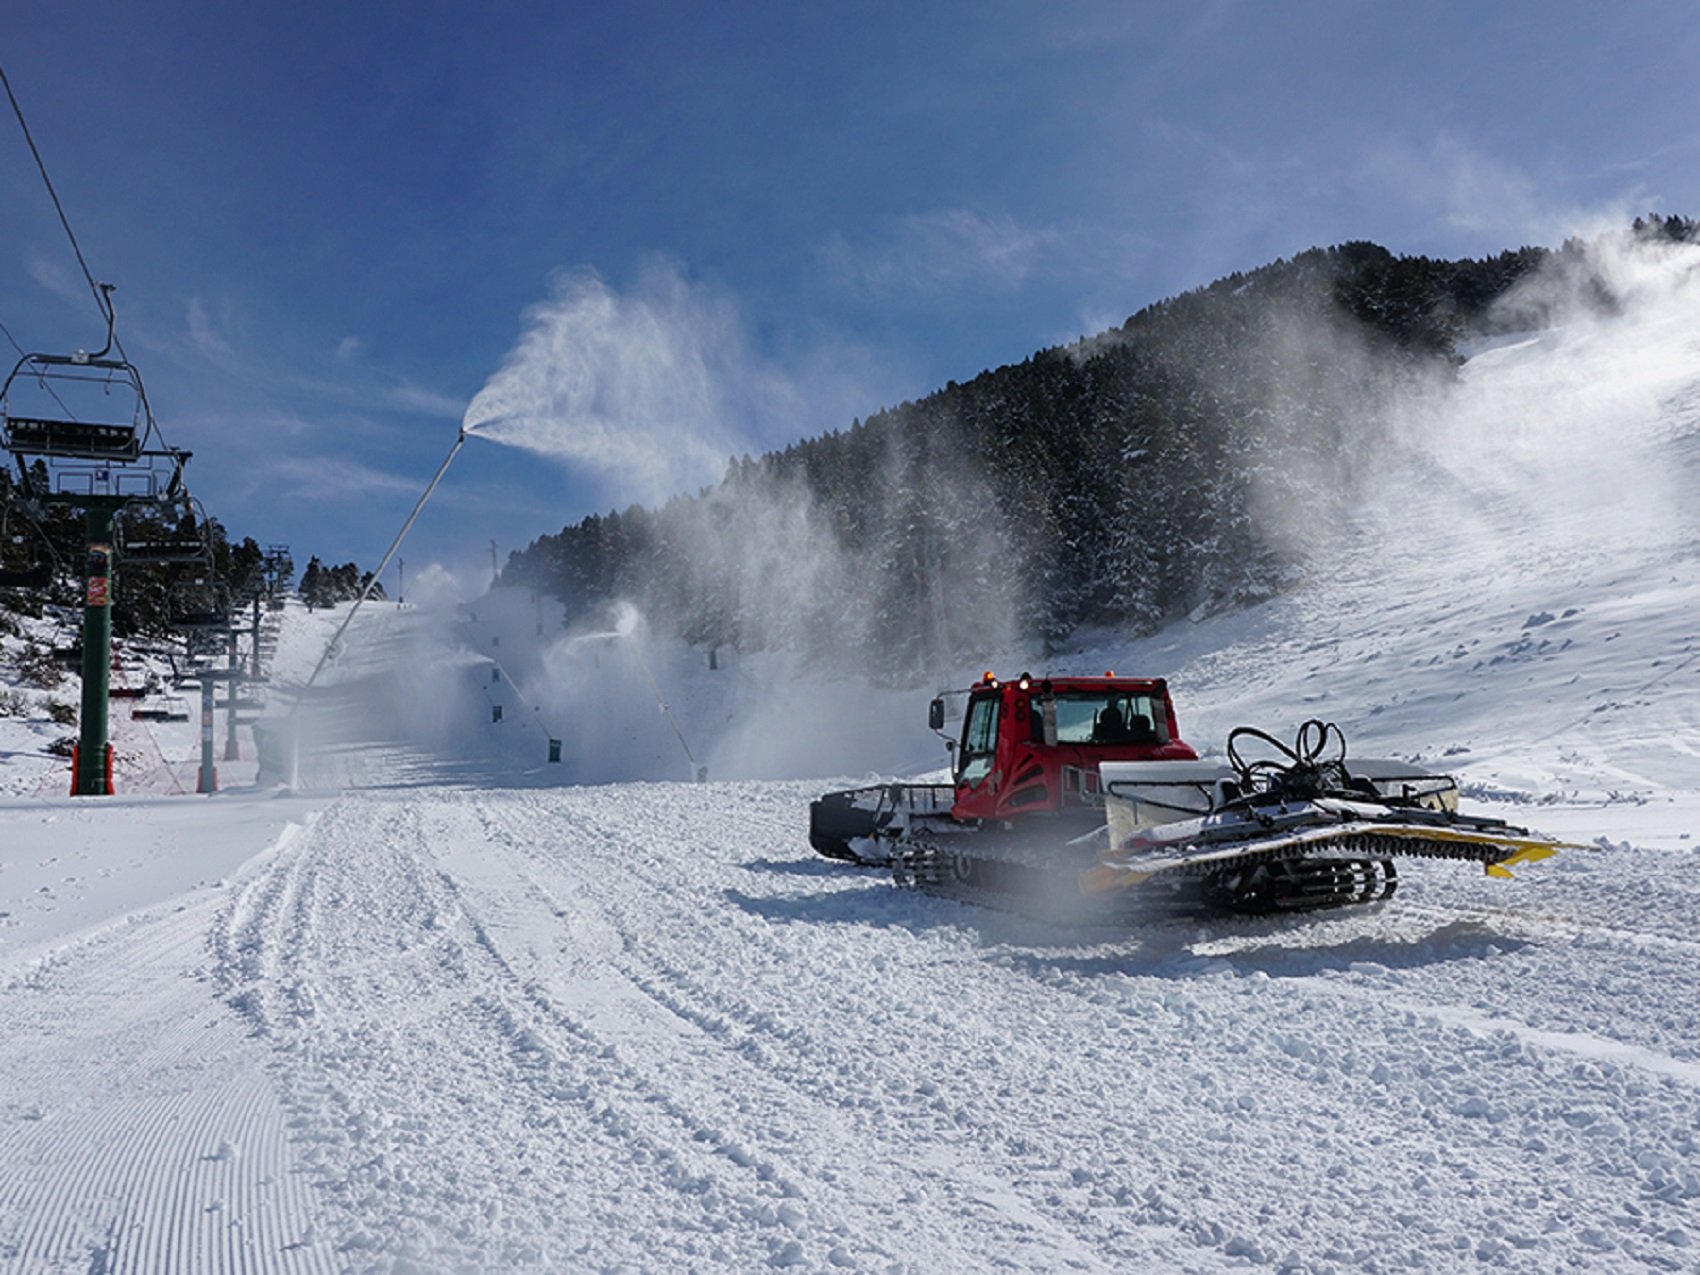 La Masella enceta la temporada d'esquí aquest dijous